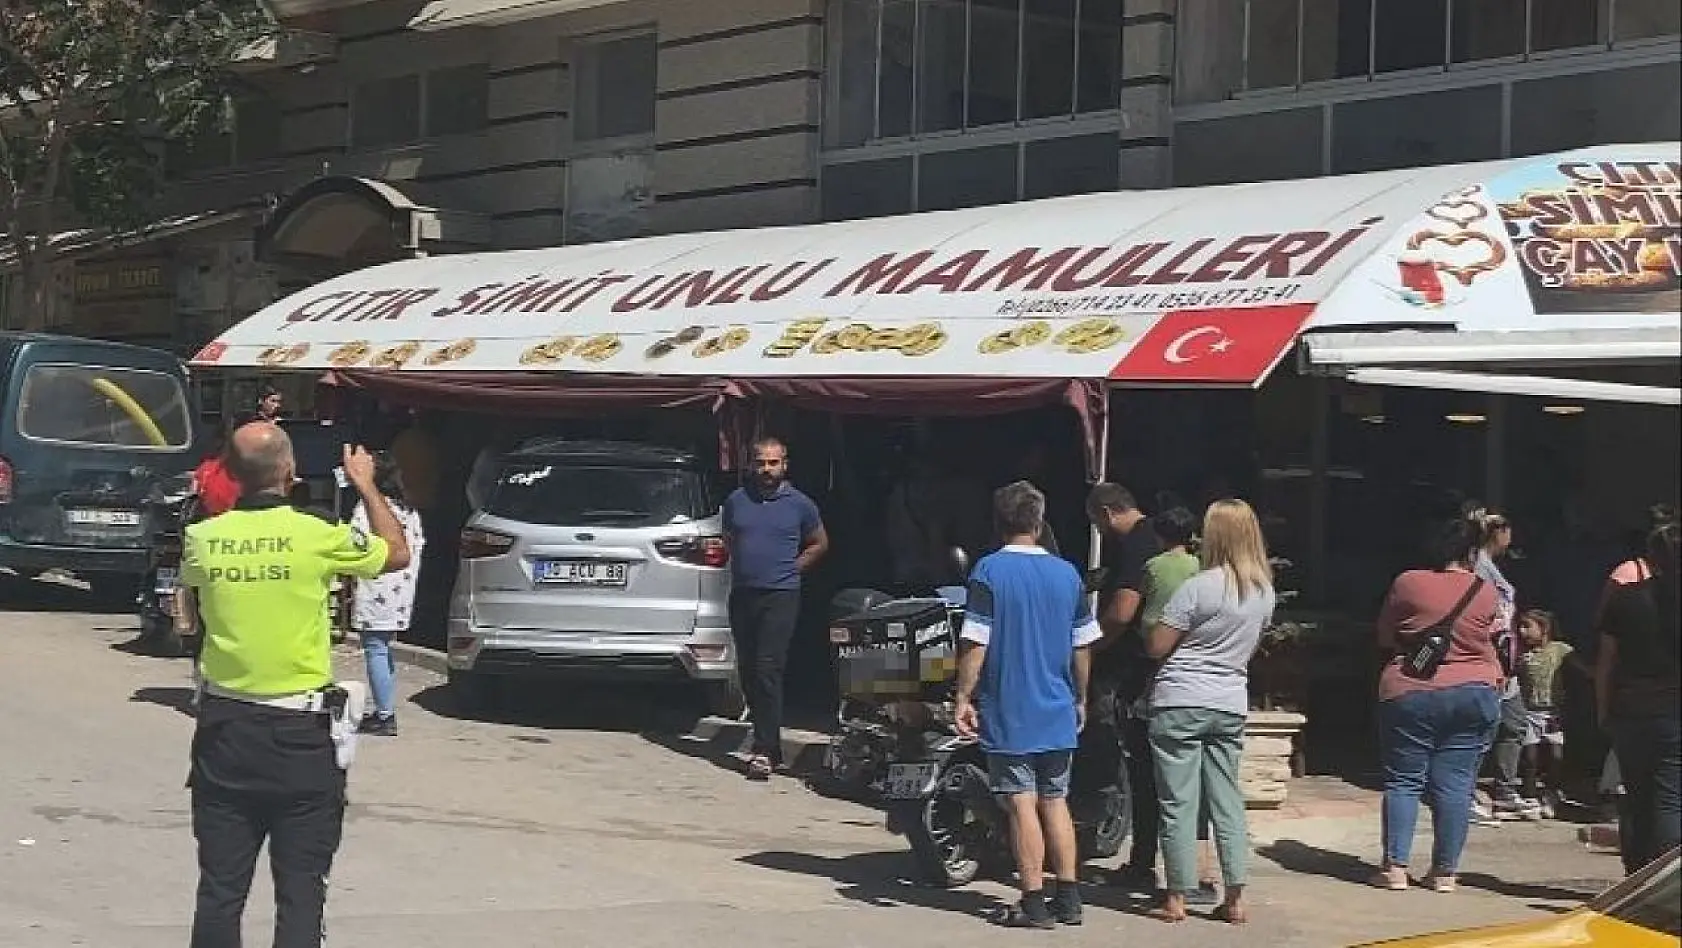 Bandırma'da otomobil simit dükkanına girdi